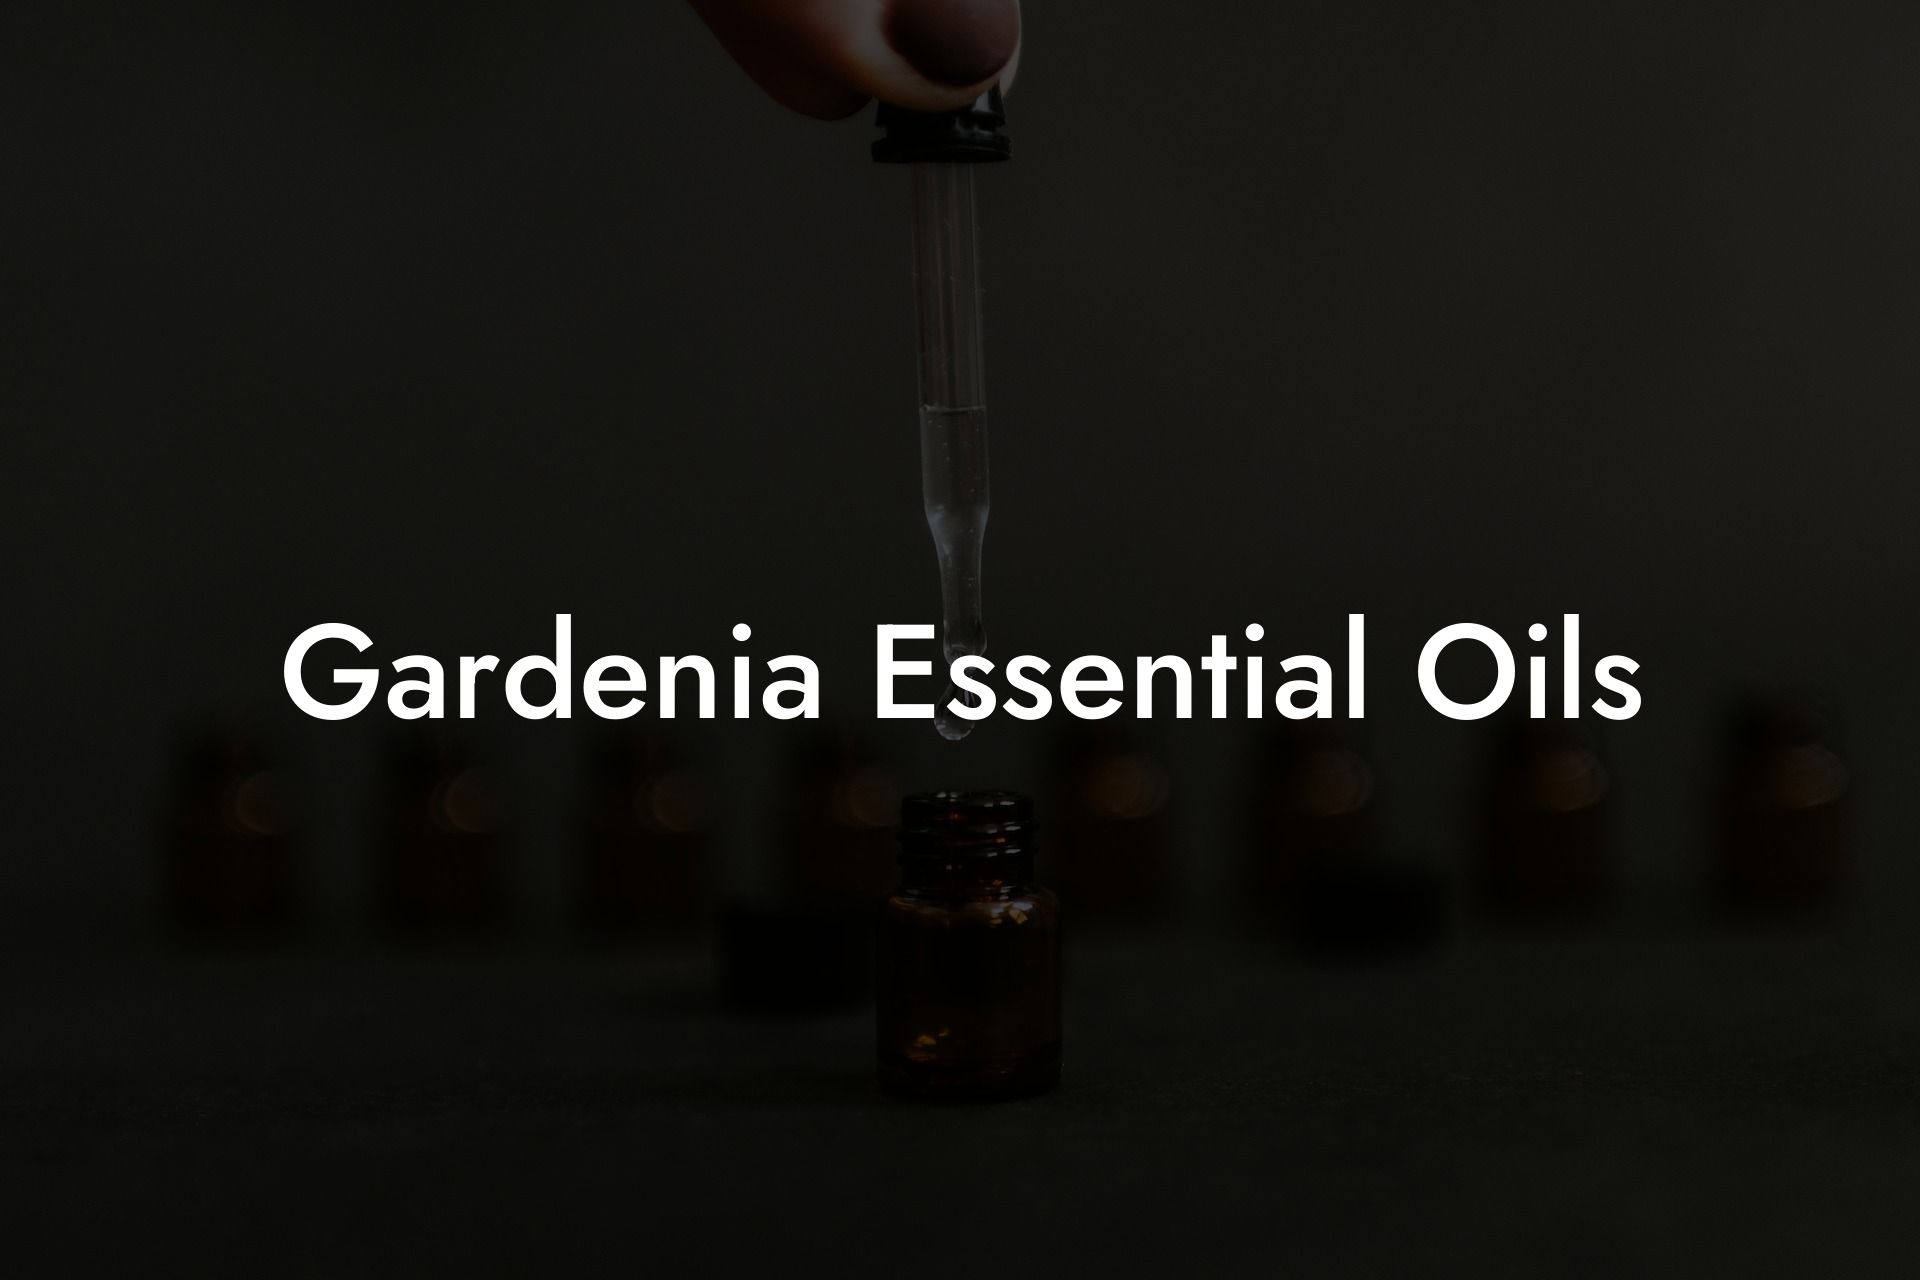 Gardenia Essential Oils